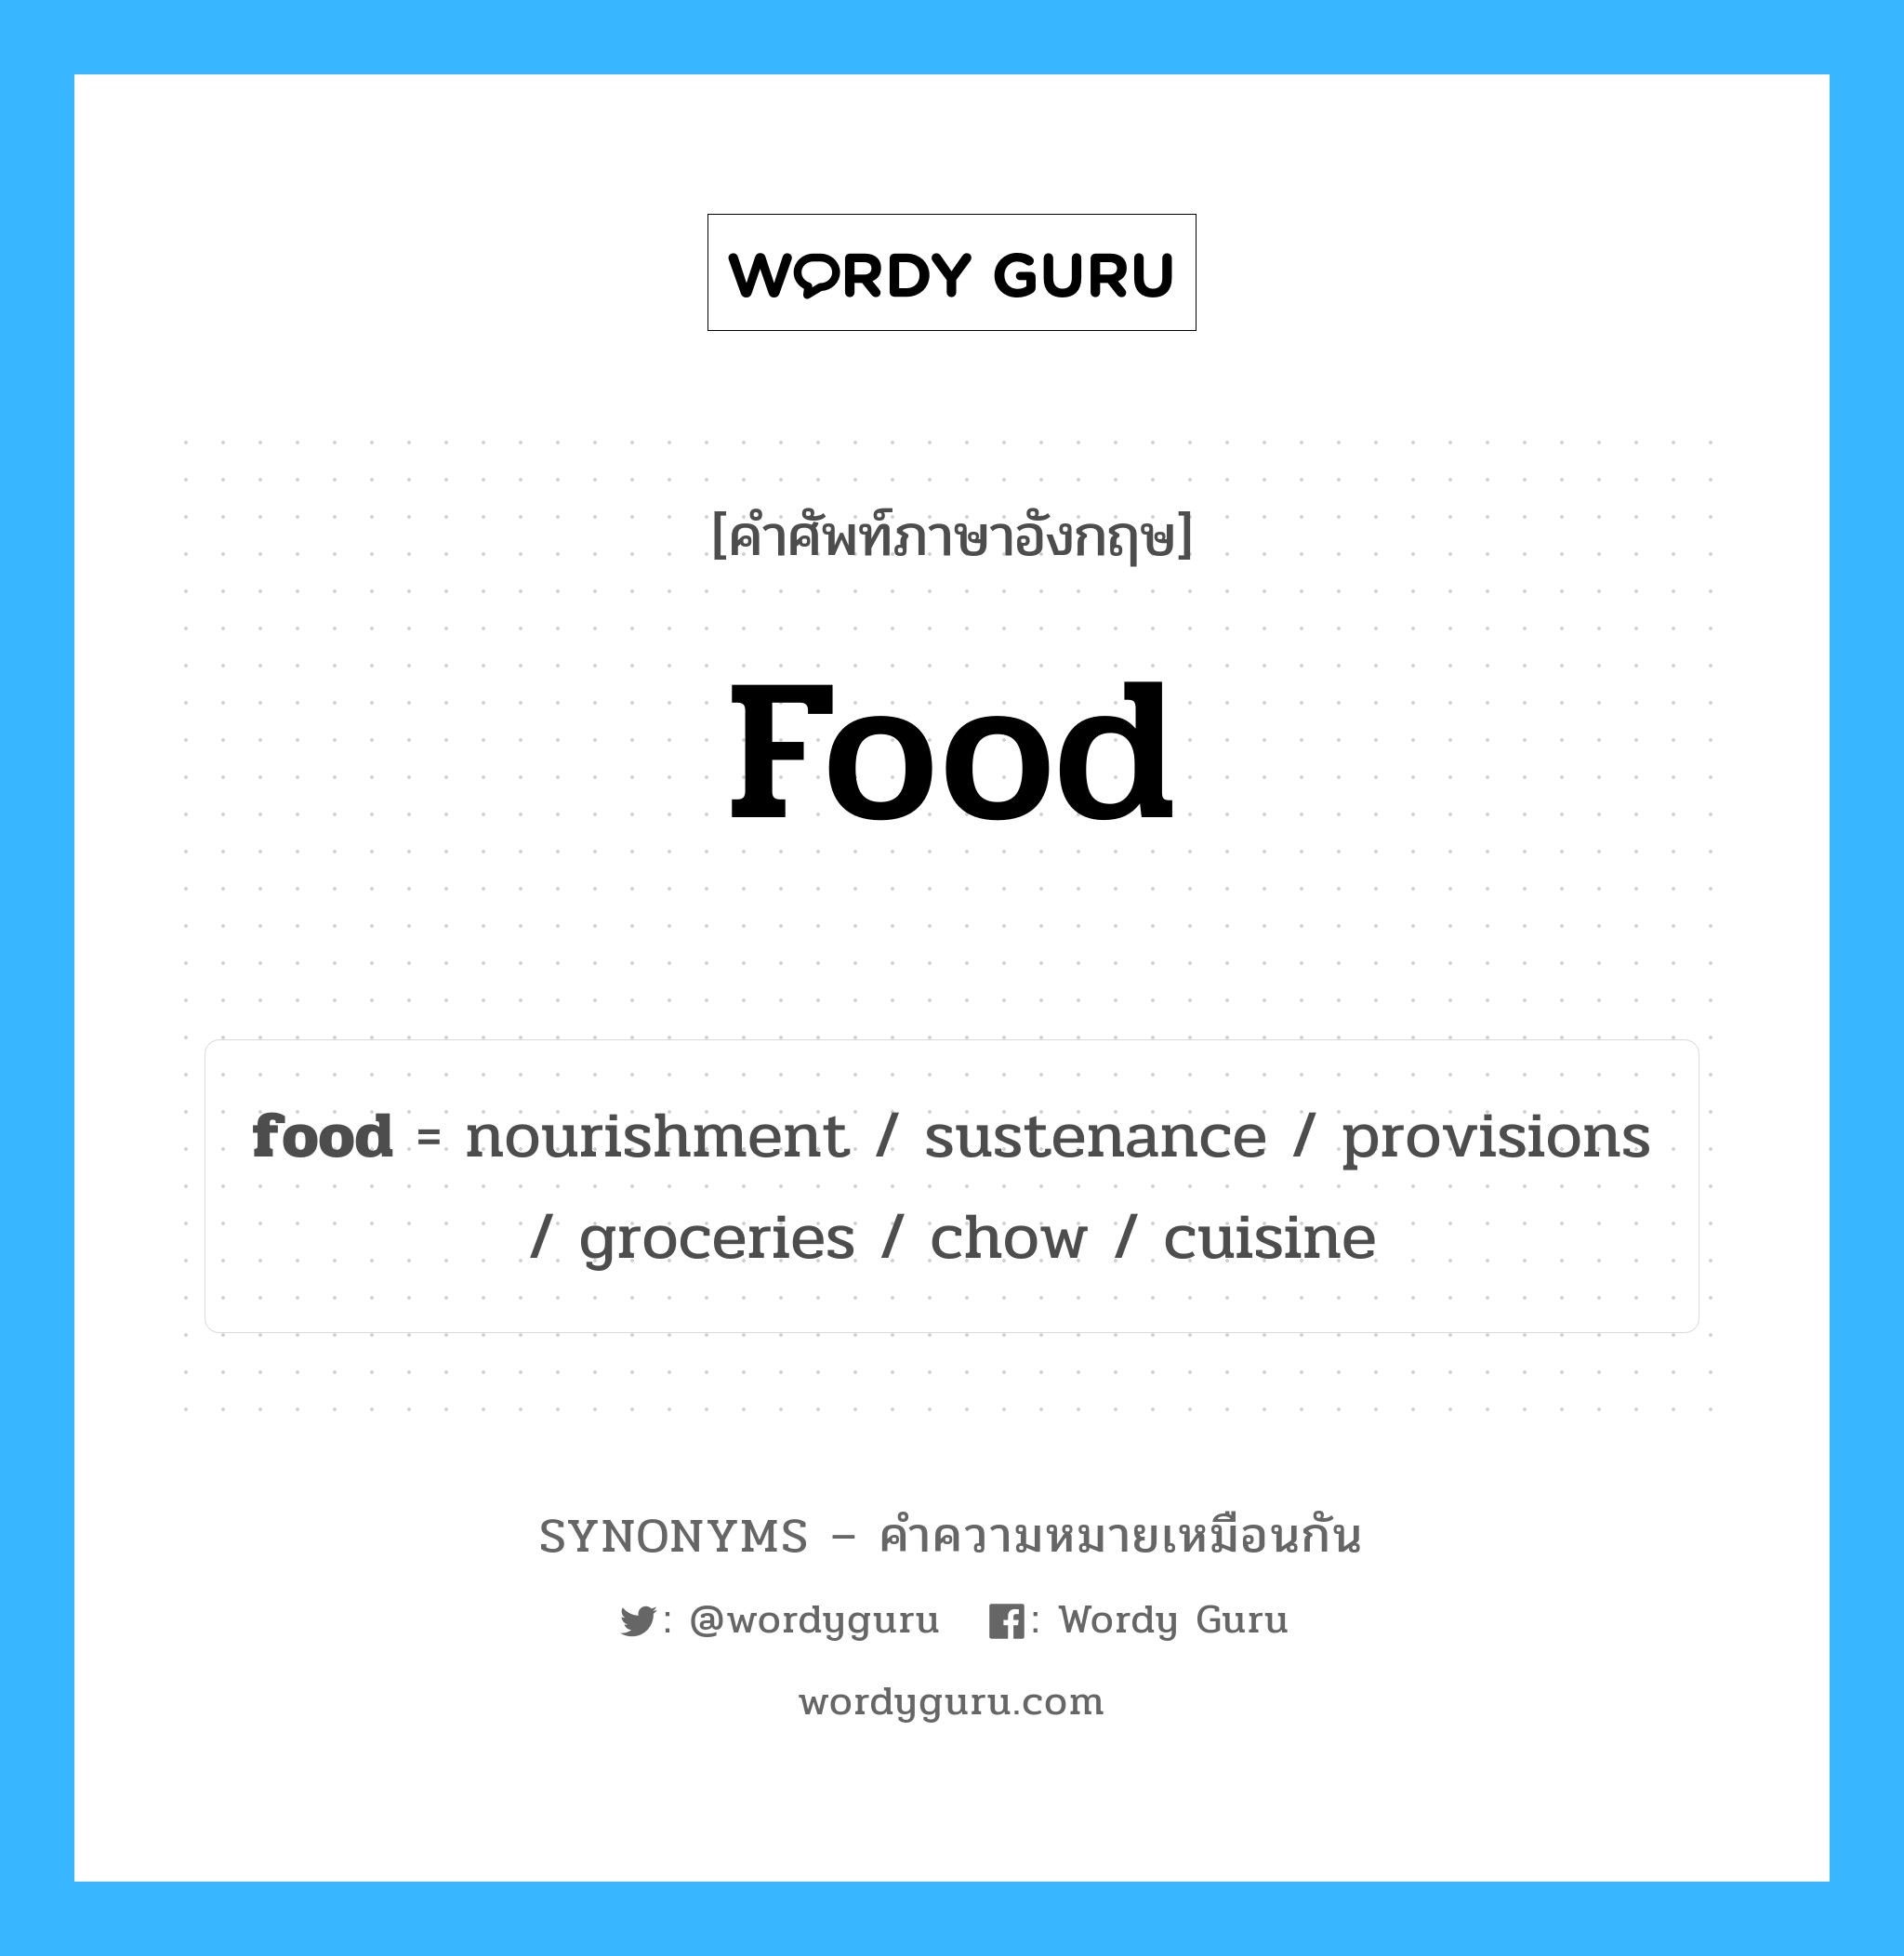 cuisine เป็นหนึ่งใน food และมีคำอื่น ๆ อีกดังนี้, คำศัพท์ภาษาอังกฤษ cuisine ความหมายคล้ายกันกับ food แปลว่า อาหาร หมวด food